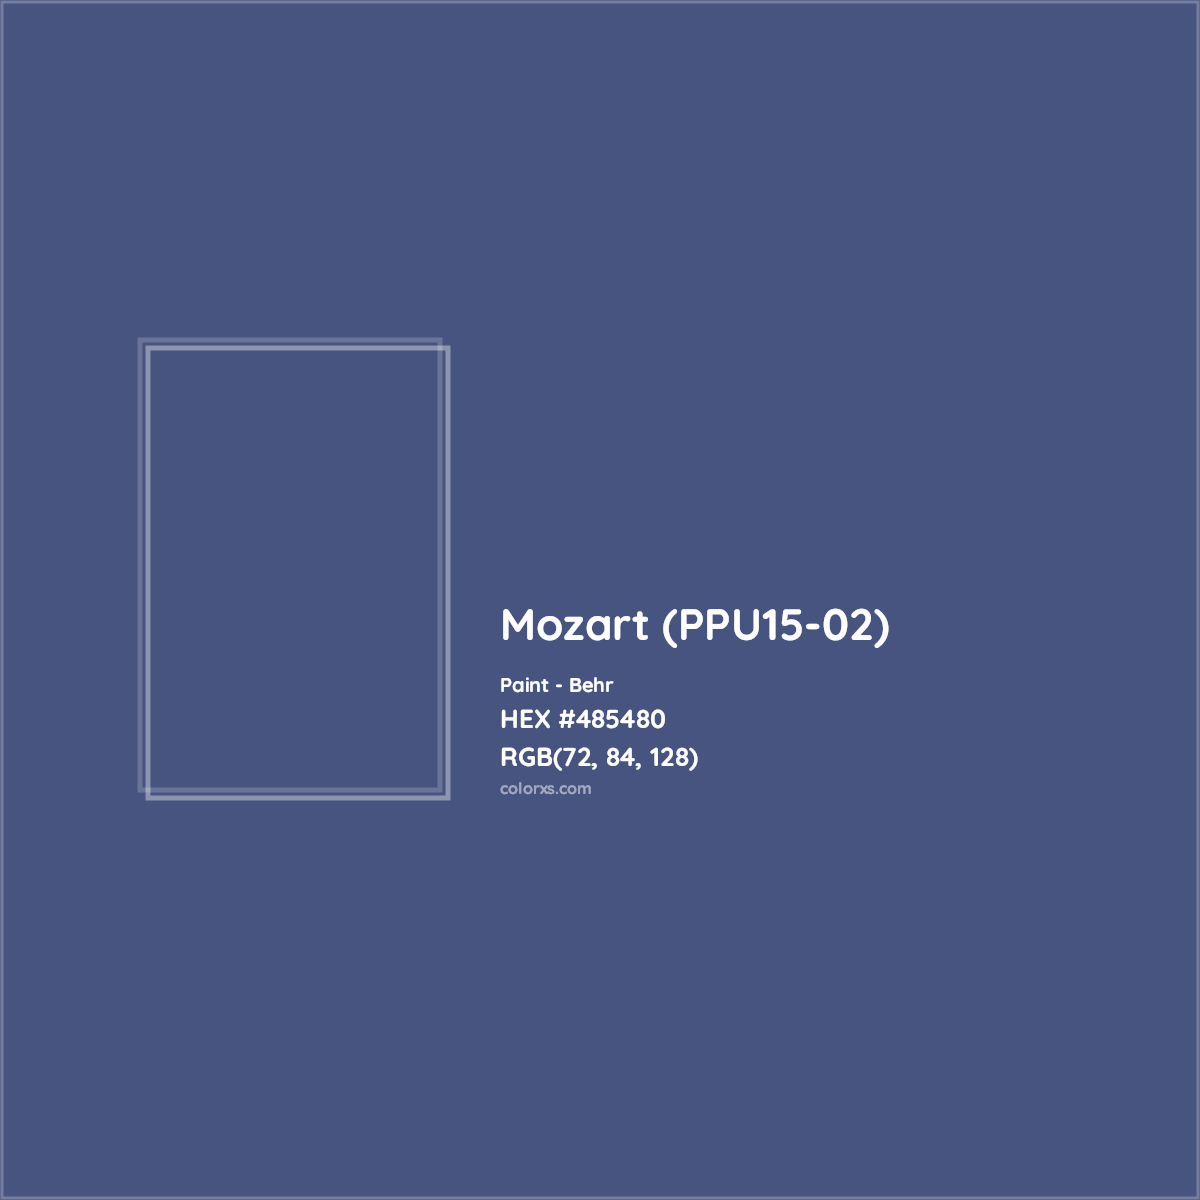 HEX #485480 Mozart (PPU15-02) Paint Behr - Color Code